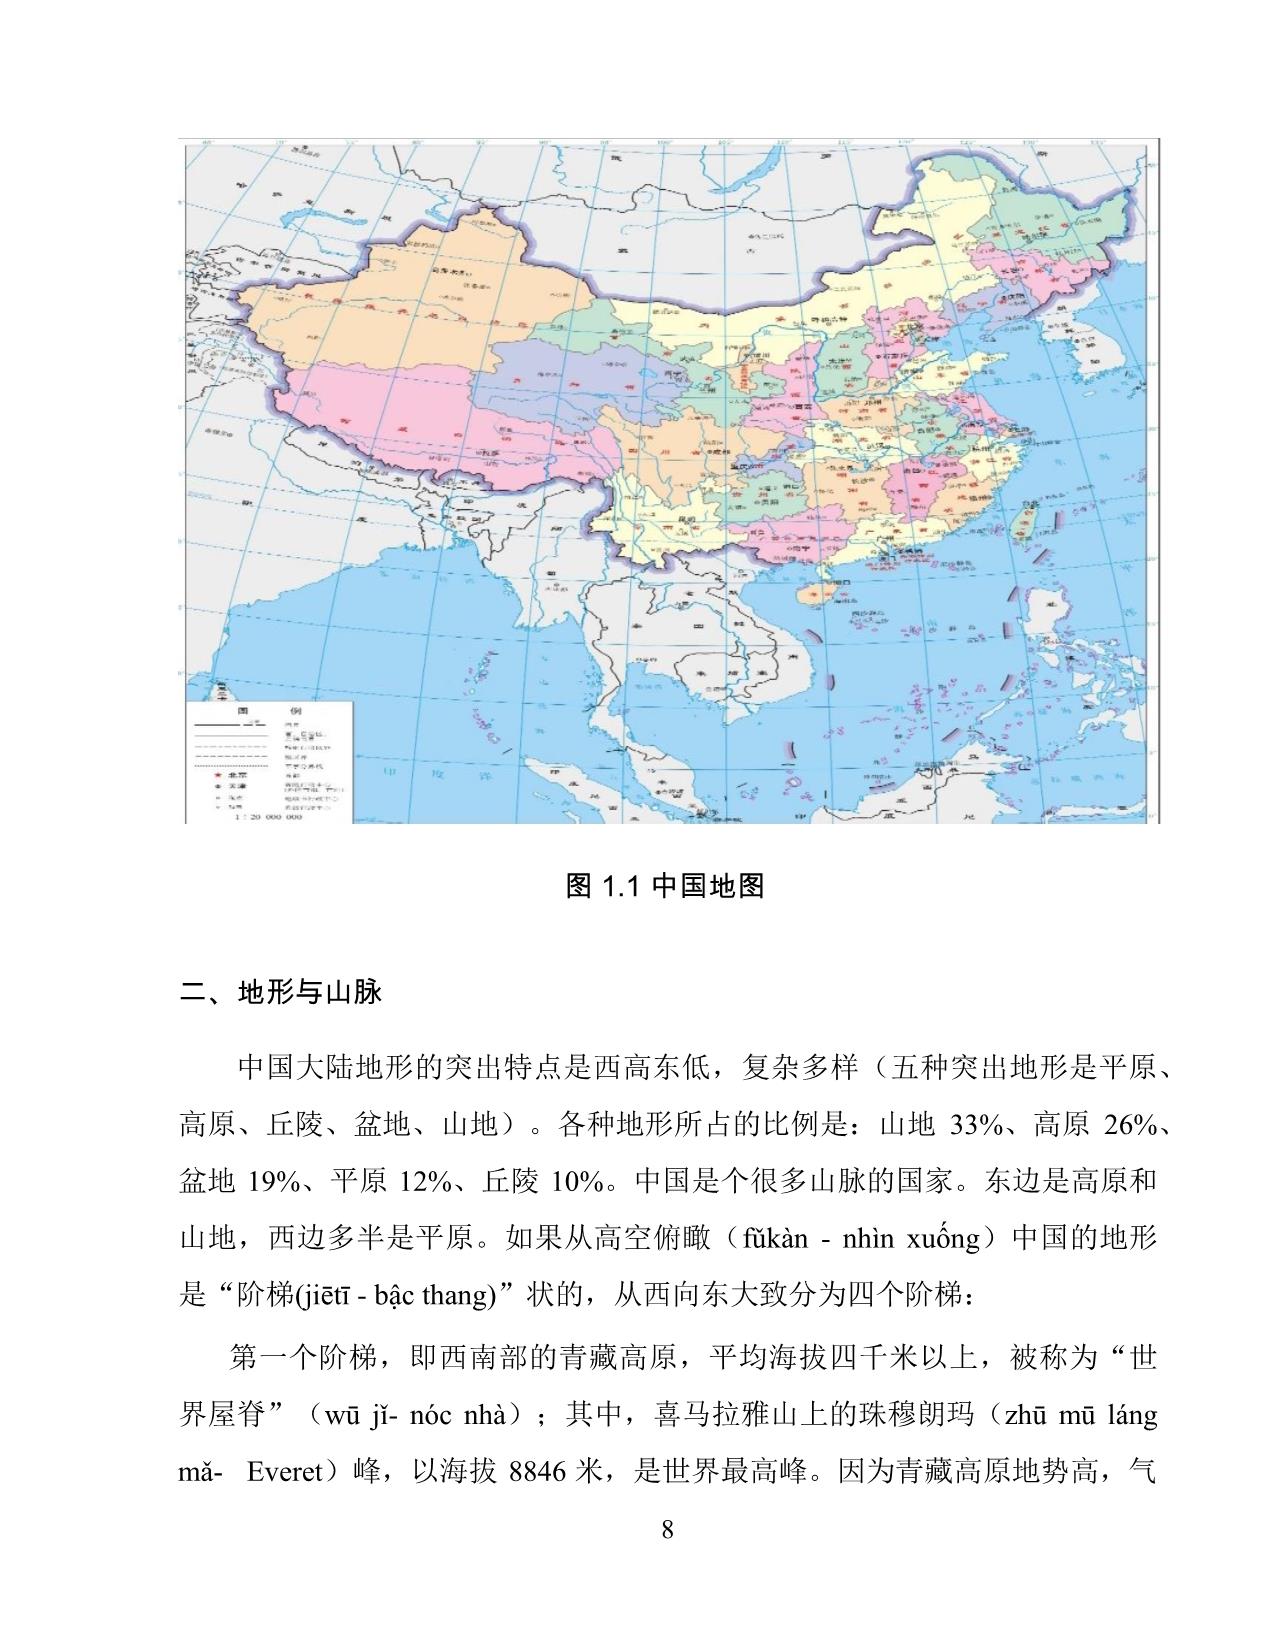 Giáo trình Đất nước học Trung Quốc trang 10